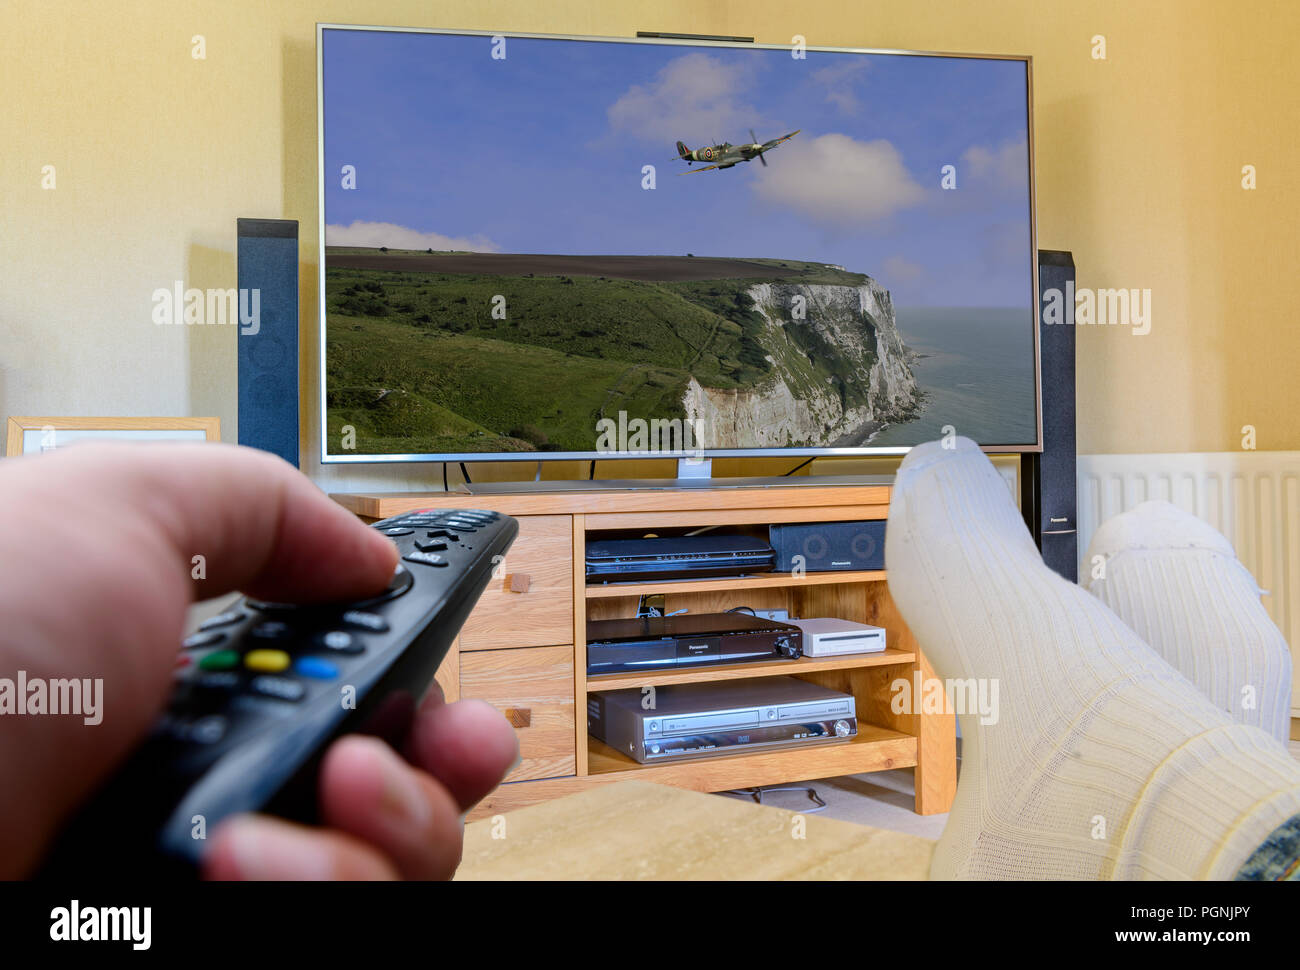 Mann mit Füßen mit Fernbedienung TV-Kanäle zu ändern. Stockfoto